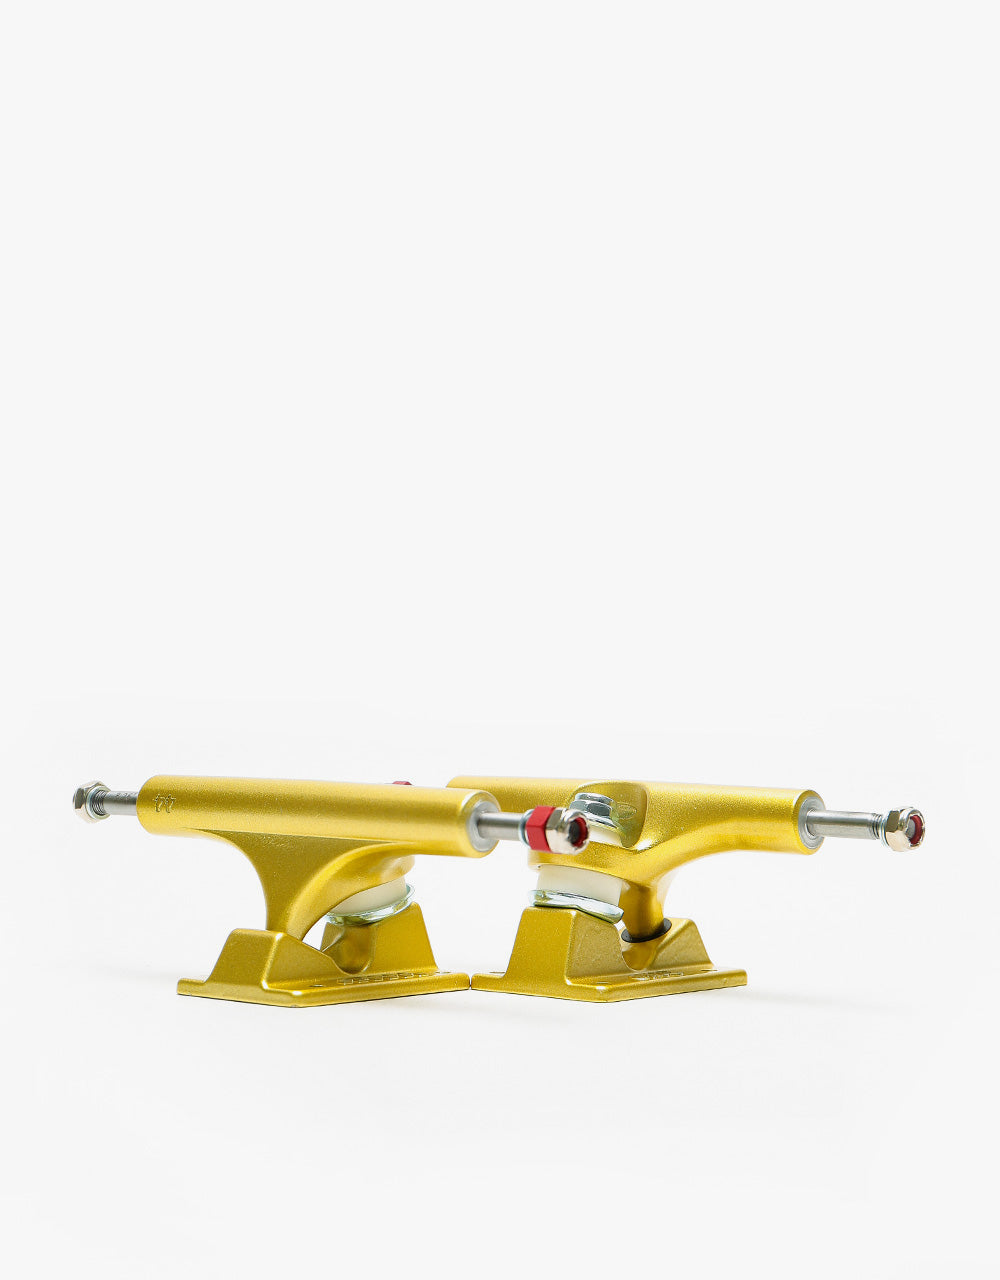 Ace AF1 44 Skateboard Trucks - Gold (Pair)